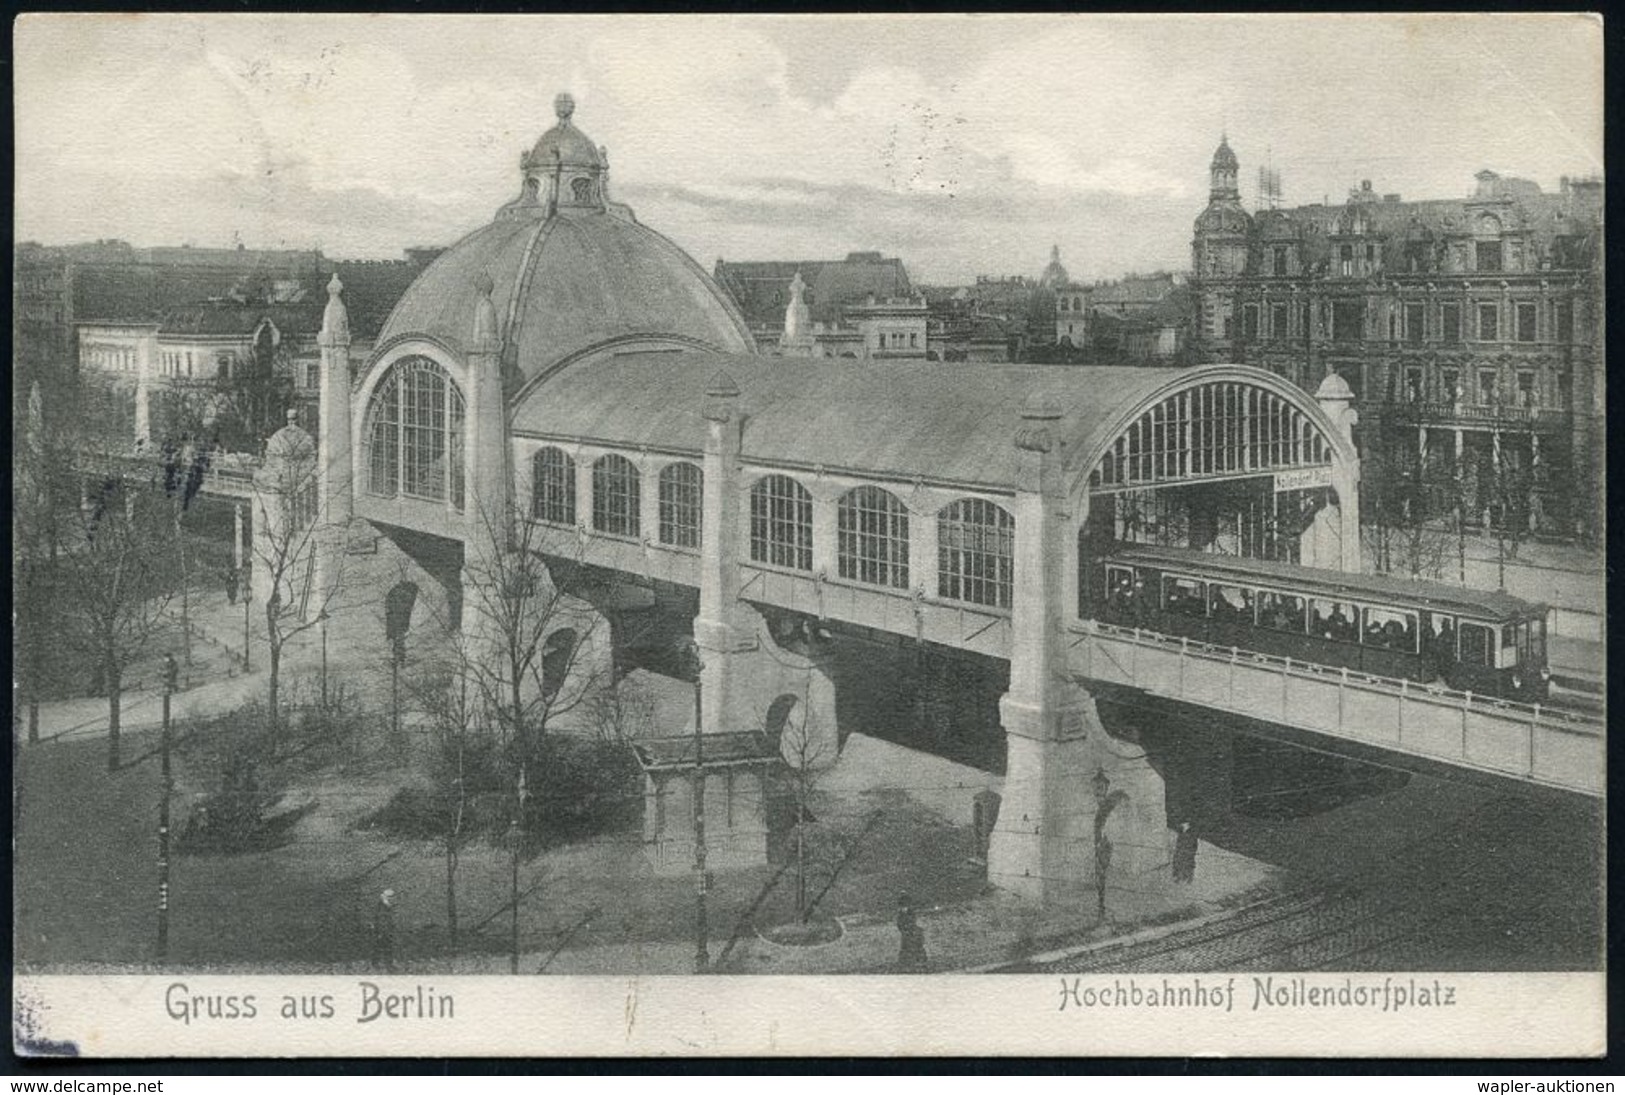 UNTERGRUNDBAHN /U-BAHN : Berlin-Schöneberg 1905/16 U-Bahnhof Nollendorfplatz, 7 Verschiedene S/w.-Foto-Ak. , Meist Gebr. - Trains